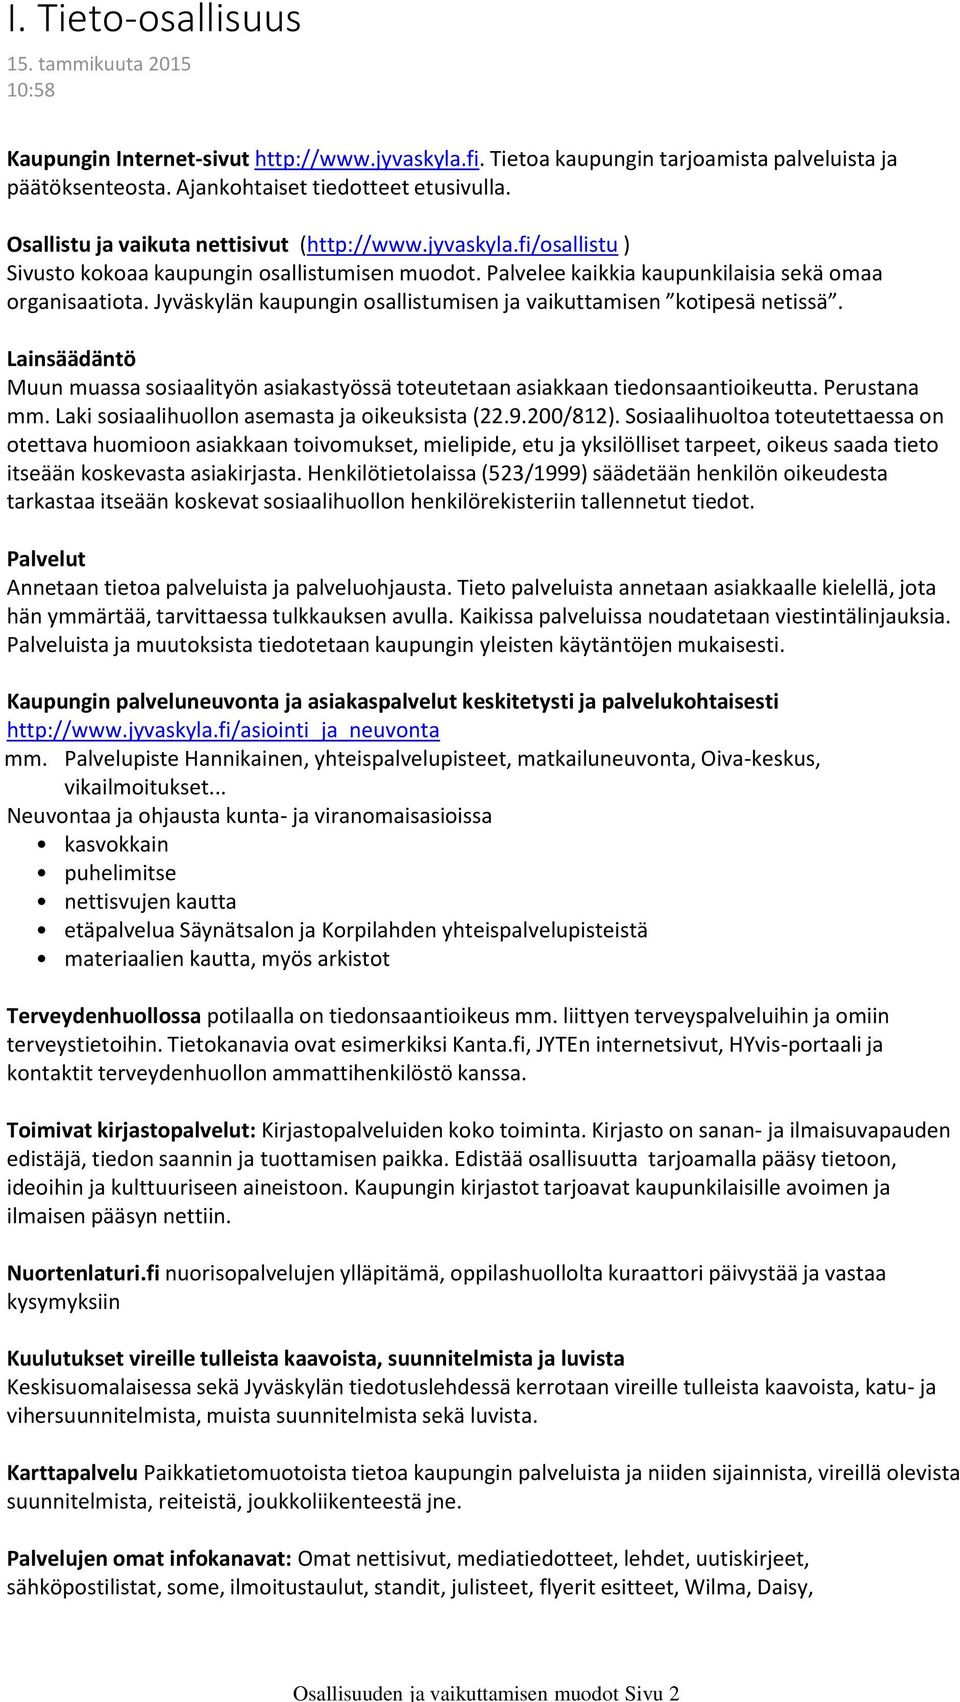 Palvelee kaikkia kaupunkilaisia sekä omaa organisaatiota. Jyväskylän kaupungin osallistumisen ja vaikuttamisen kotipesä netissä.